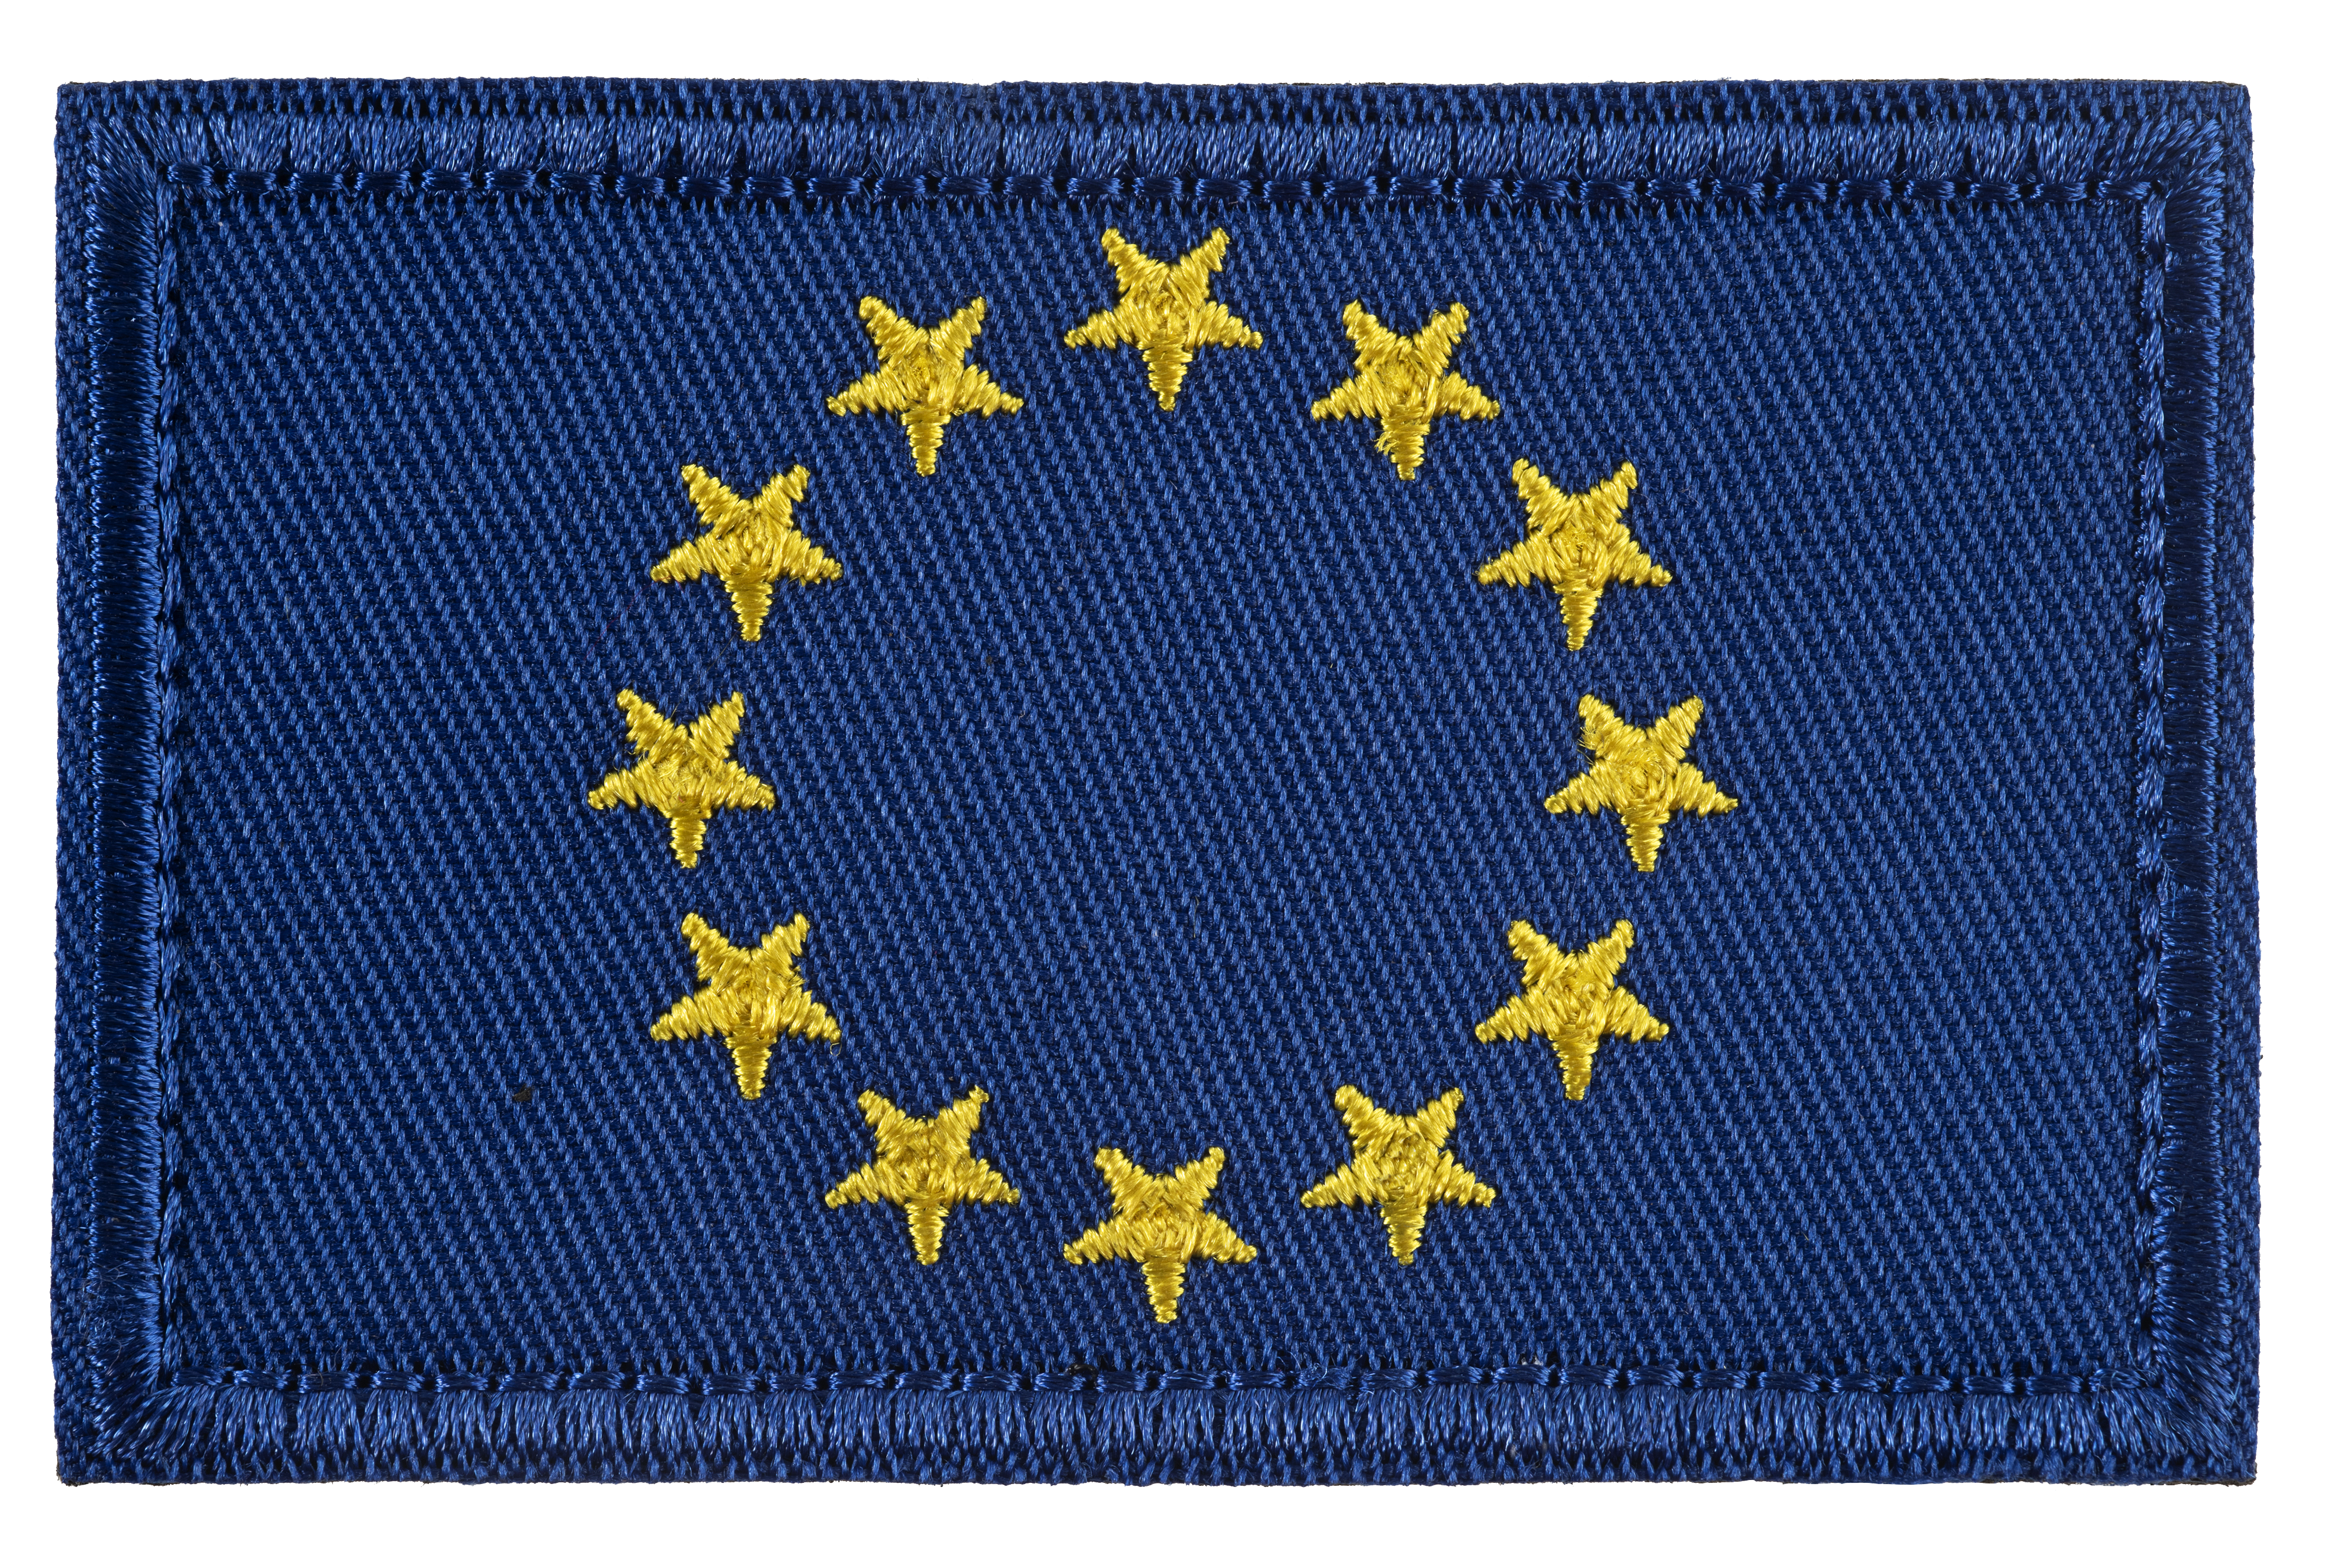 Acordion 4_EU